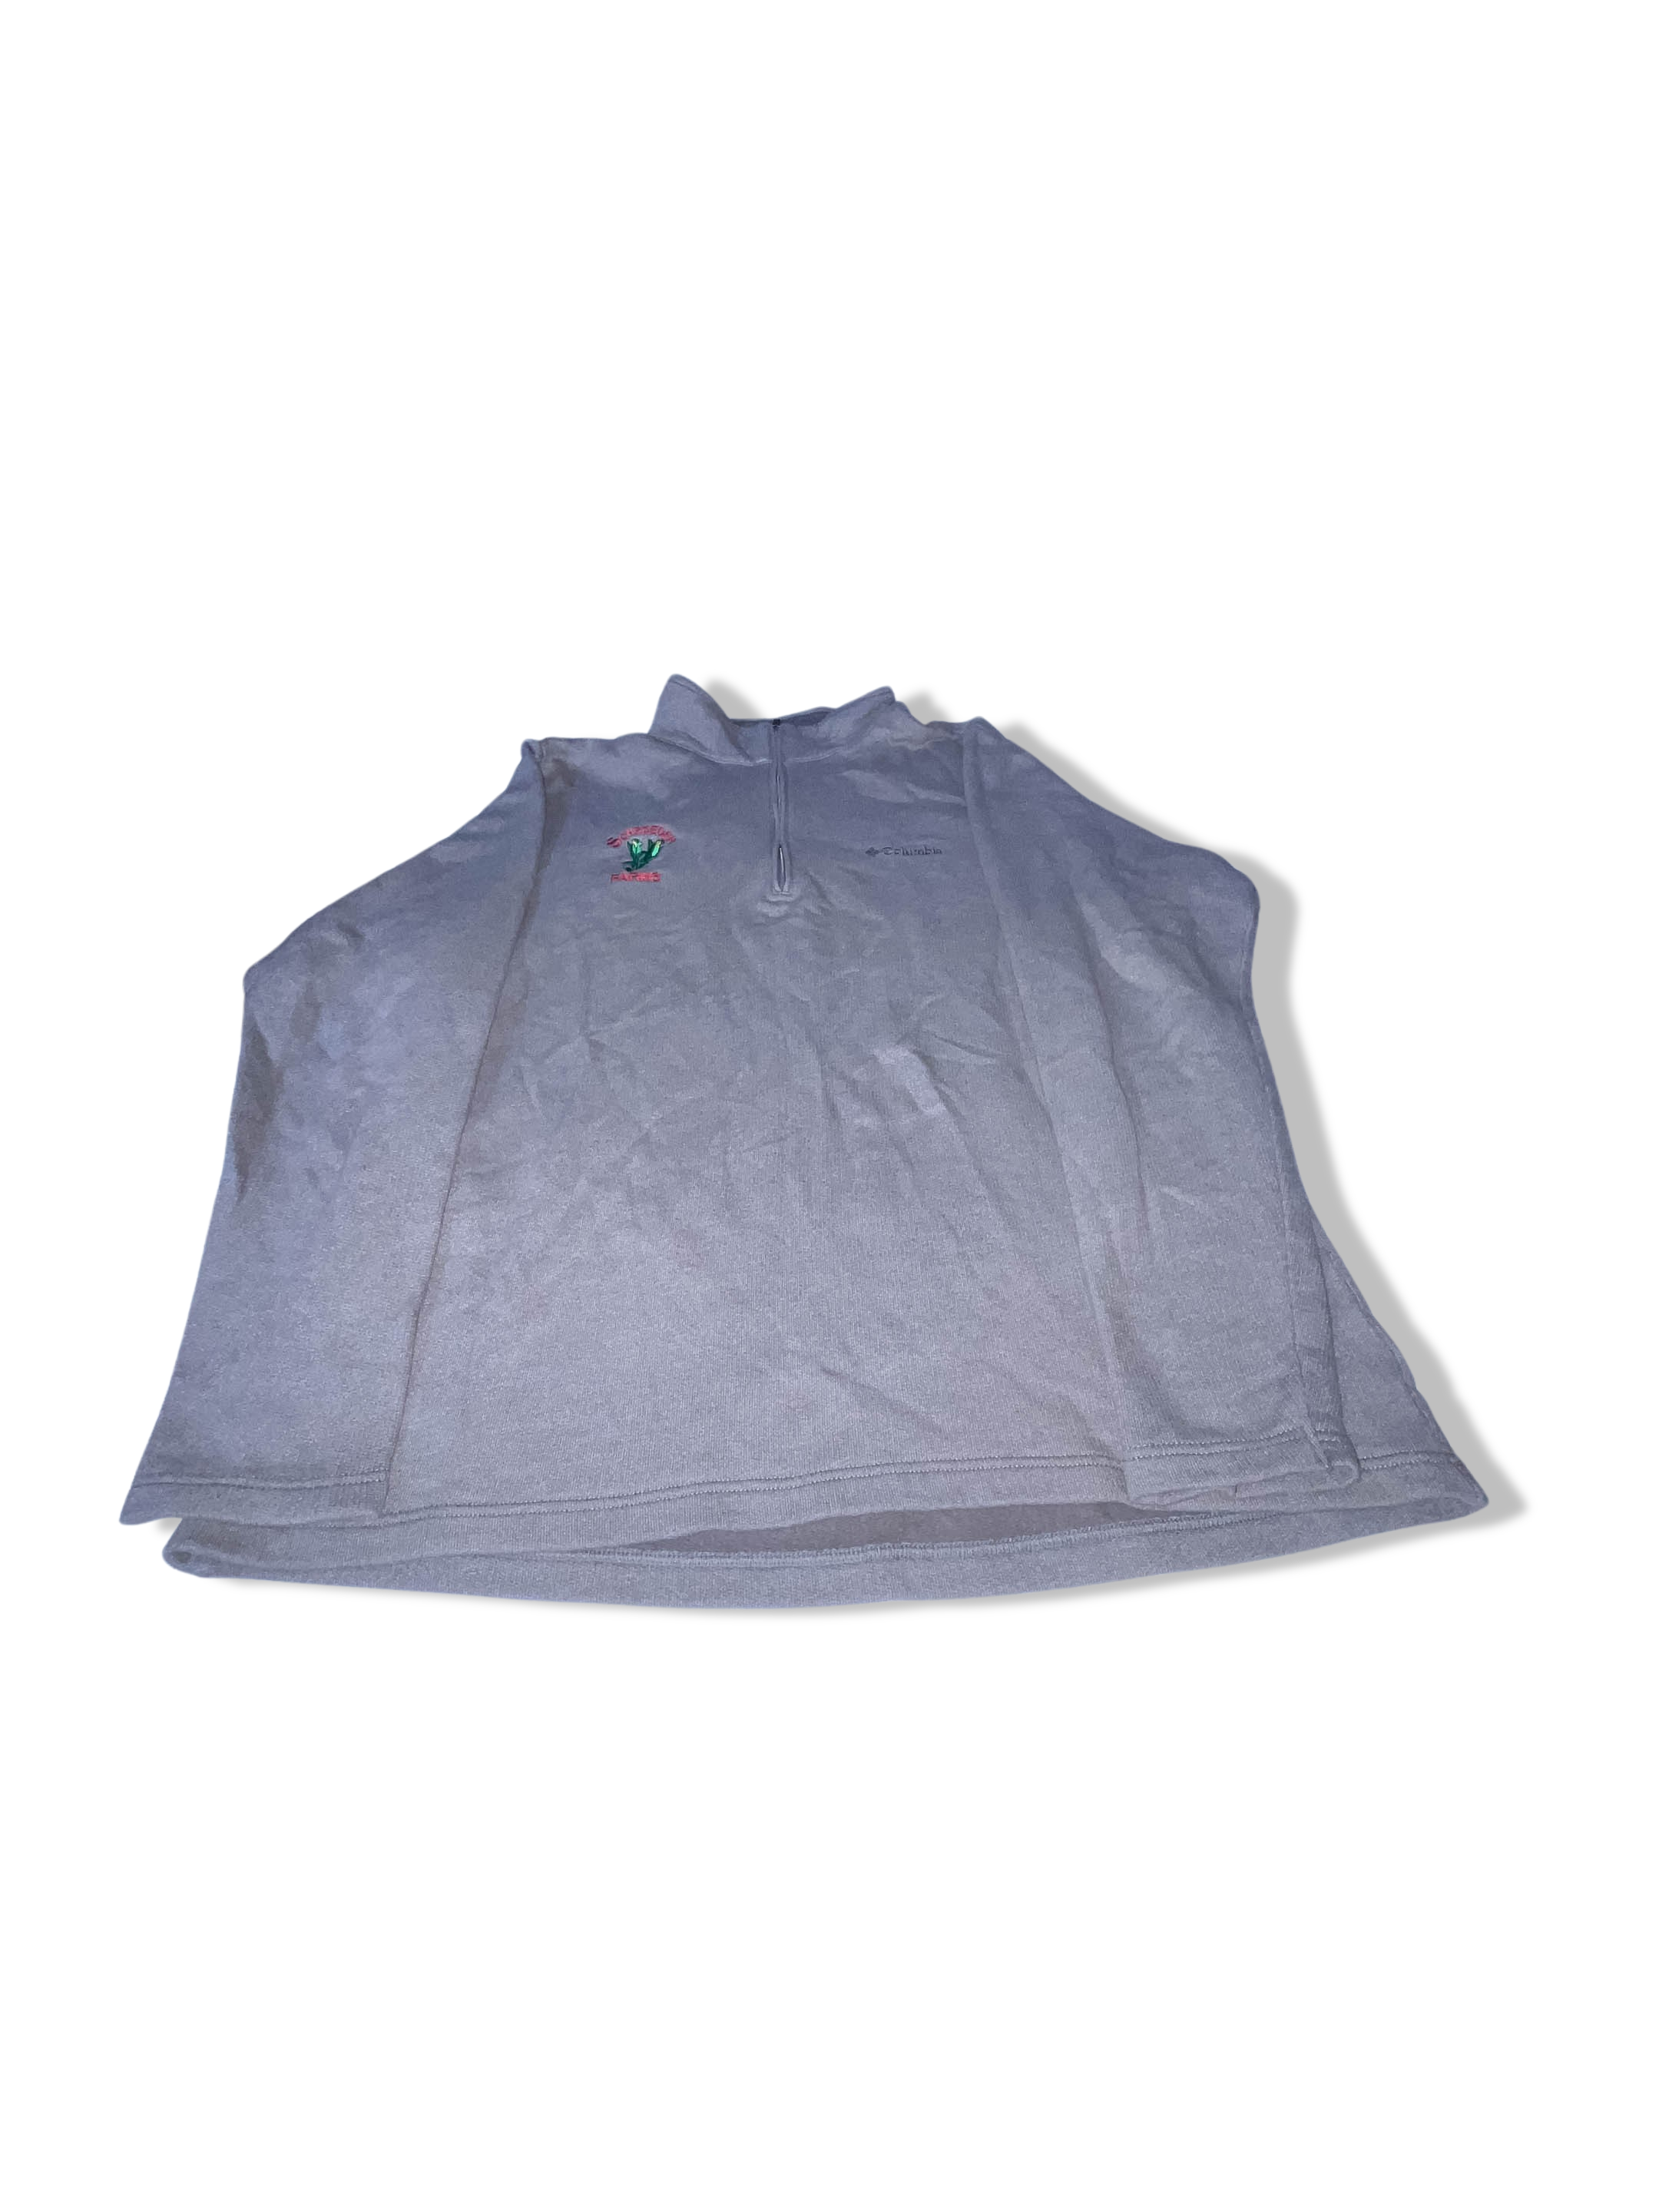 Vintage Mens Columbia sportwear grey 1/4 zip up high neck fleece large sweatshirt